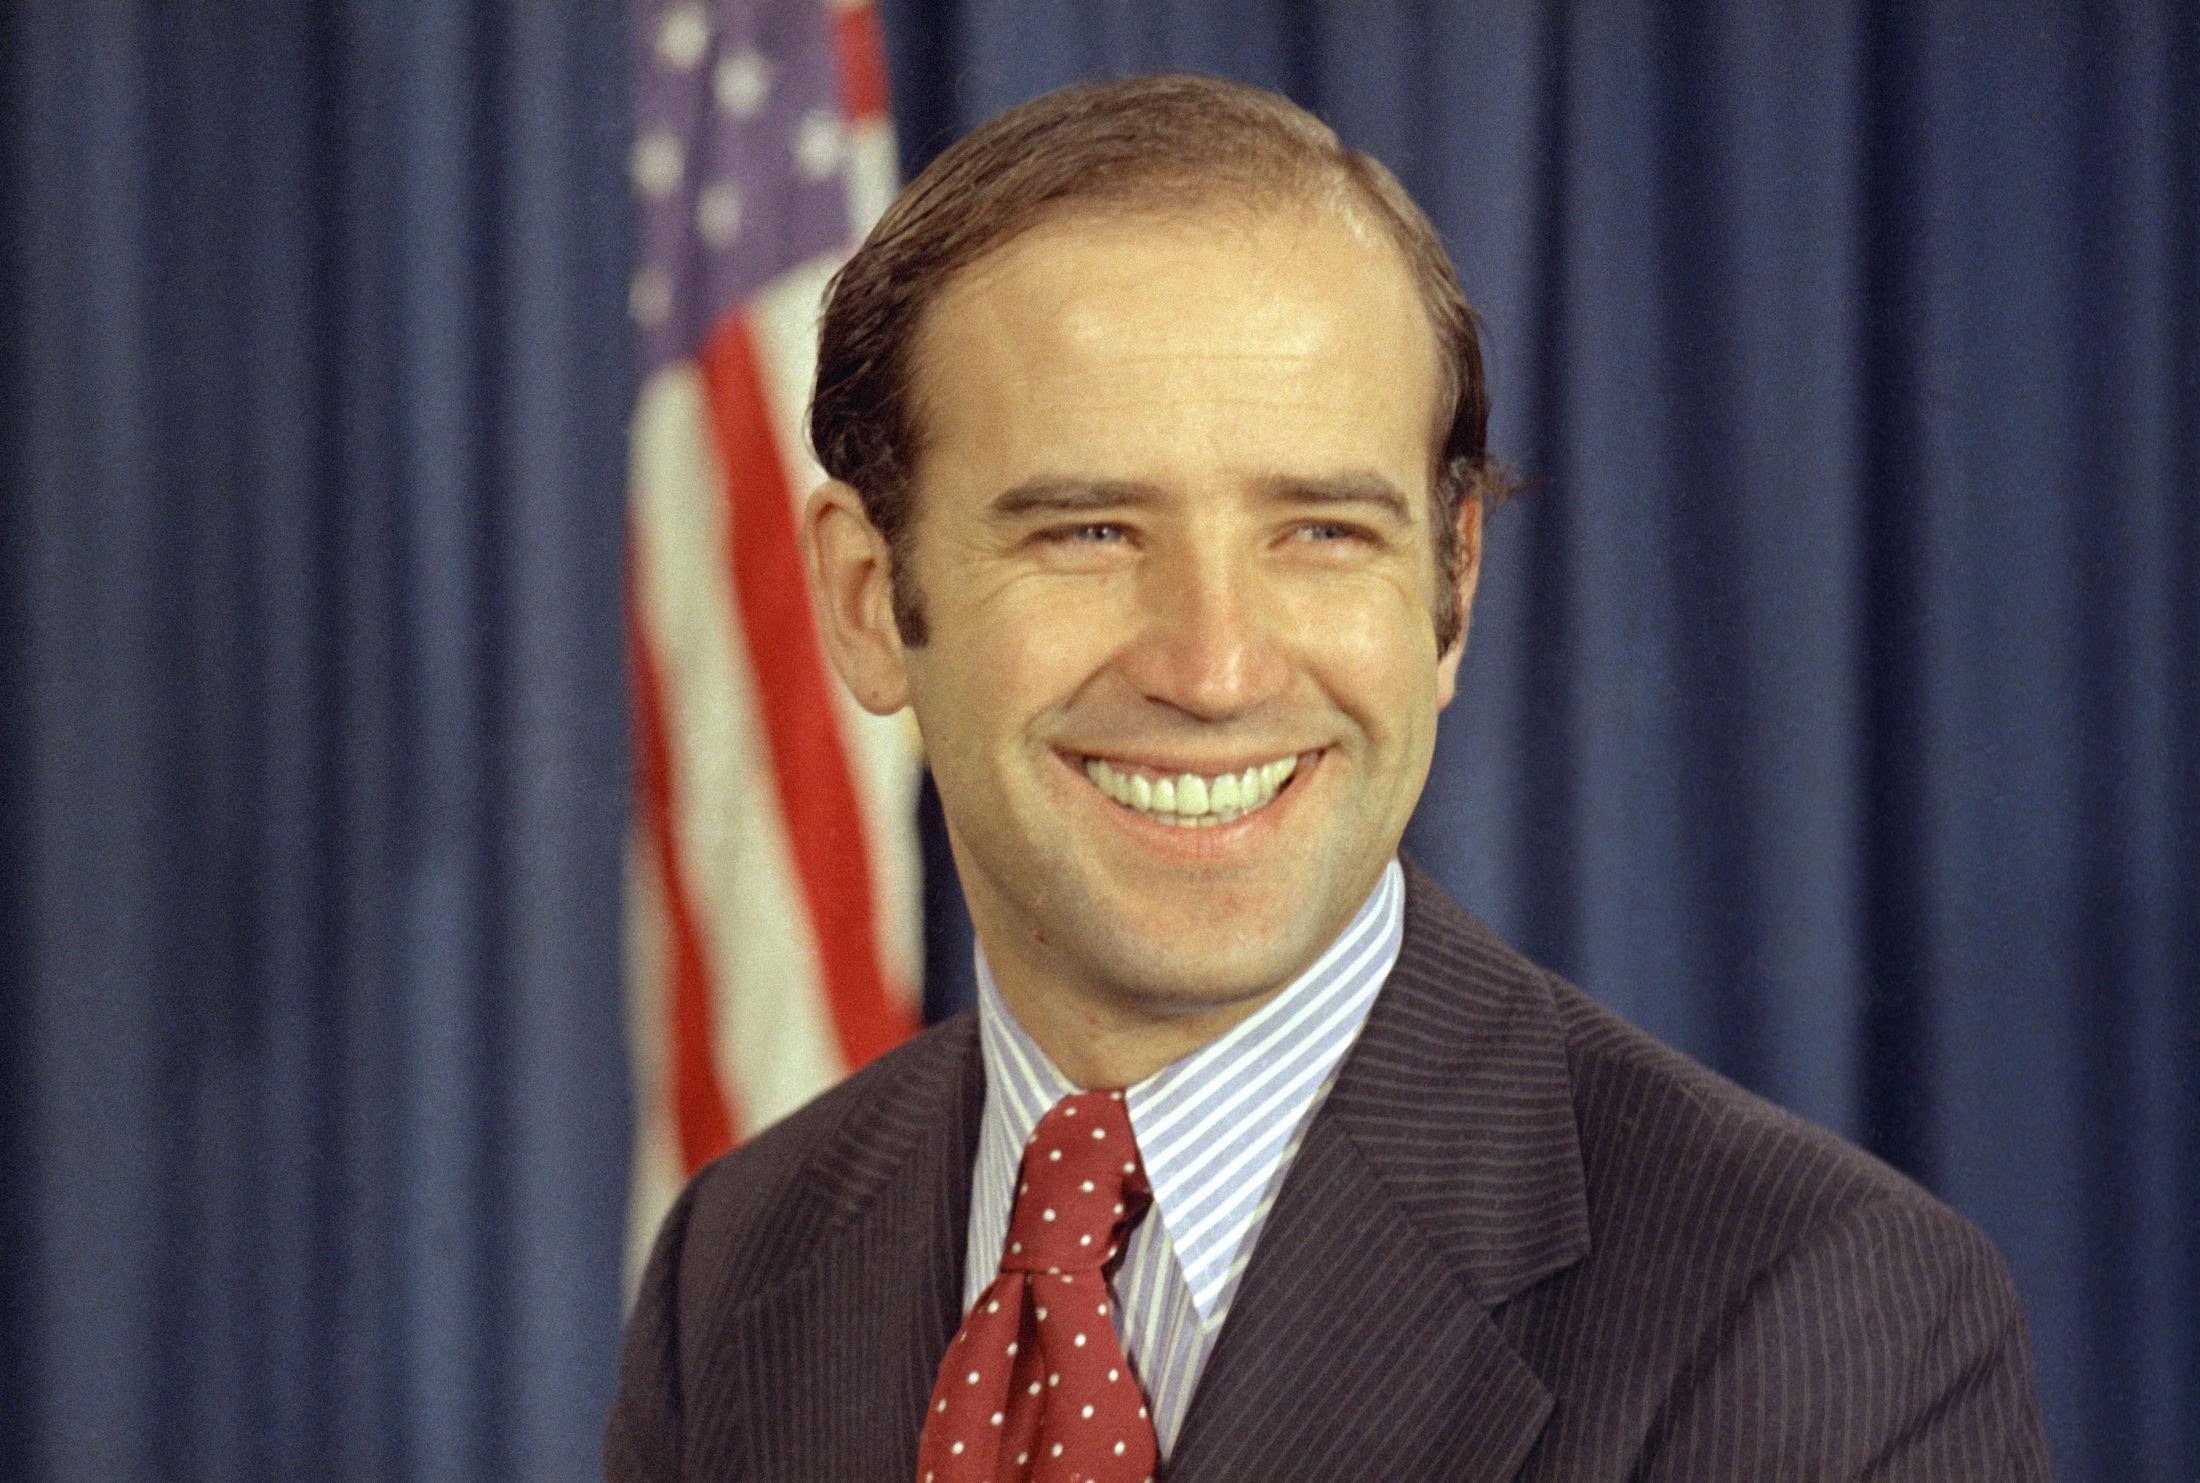 PERLERAD: Biden er kjent for sitt hvite smil. Her, i 1972, var han akkurat valgt til senator i Delaware, og hadde all grunn til å glise. Antrekket er «preppy» og tidsriktig, med stripete skjorte og et prikkete rødt slips. Foto: AP / NTB